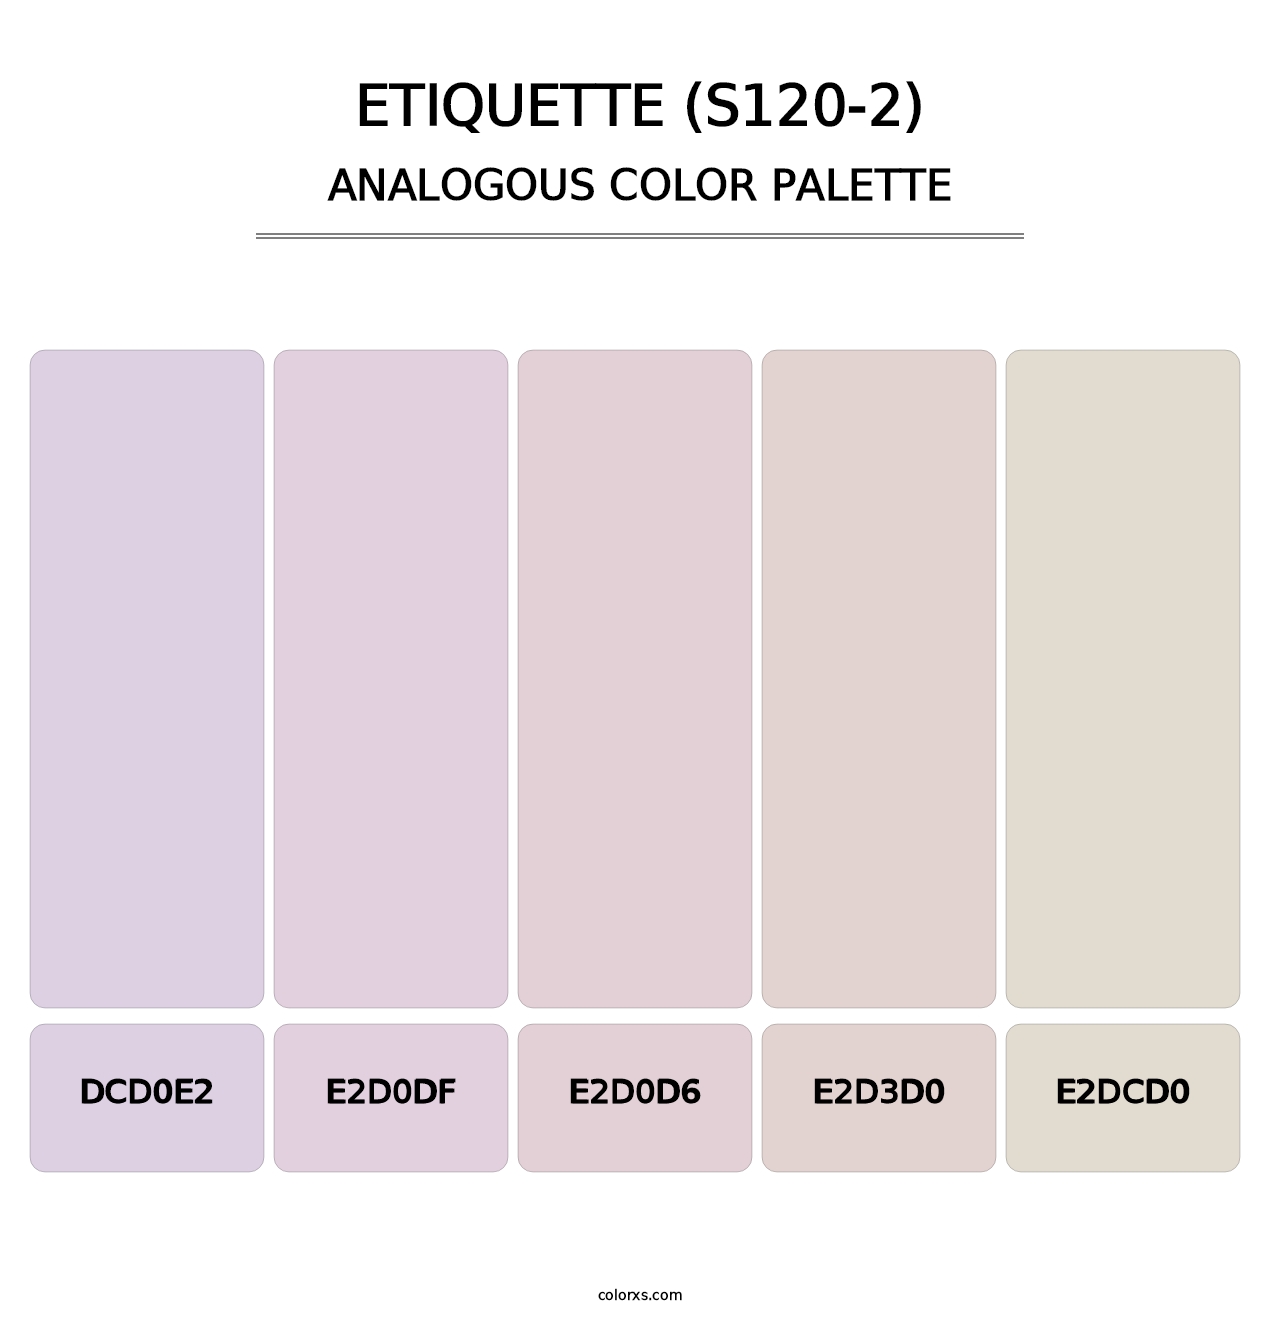 Etiquette (S120-2) - Analogous Color Palette